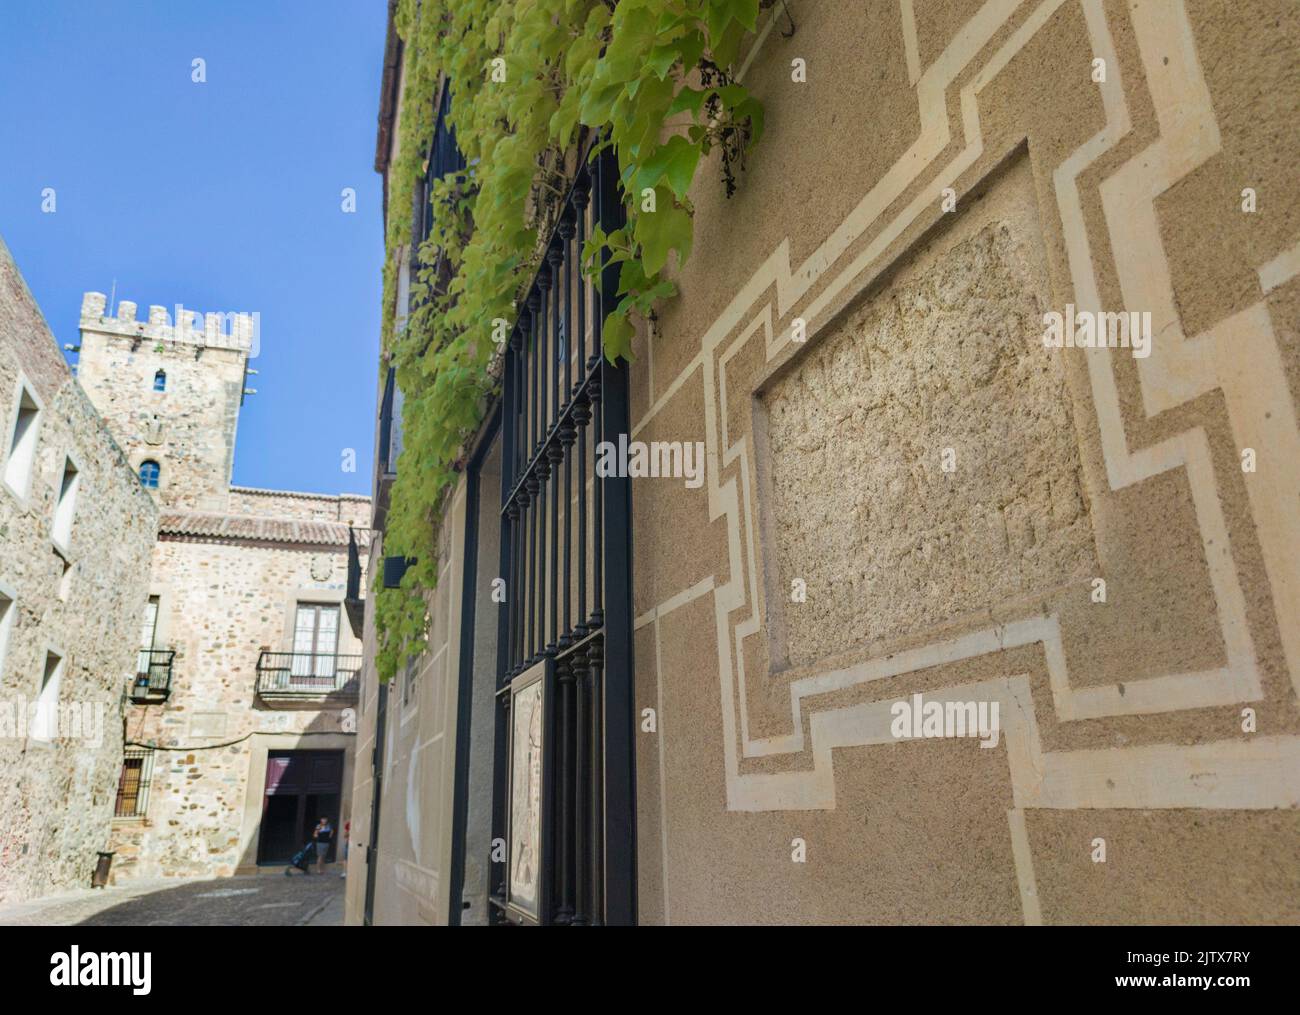 Tombe romaine construite dans une maison de quartier historique. Vestiges romains encore visibles au Palais de Sande, Caceres, Estrémadure, Espagne. Banque D'Images